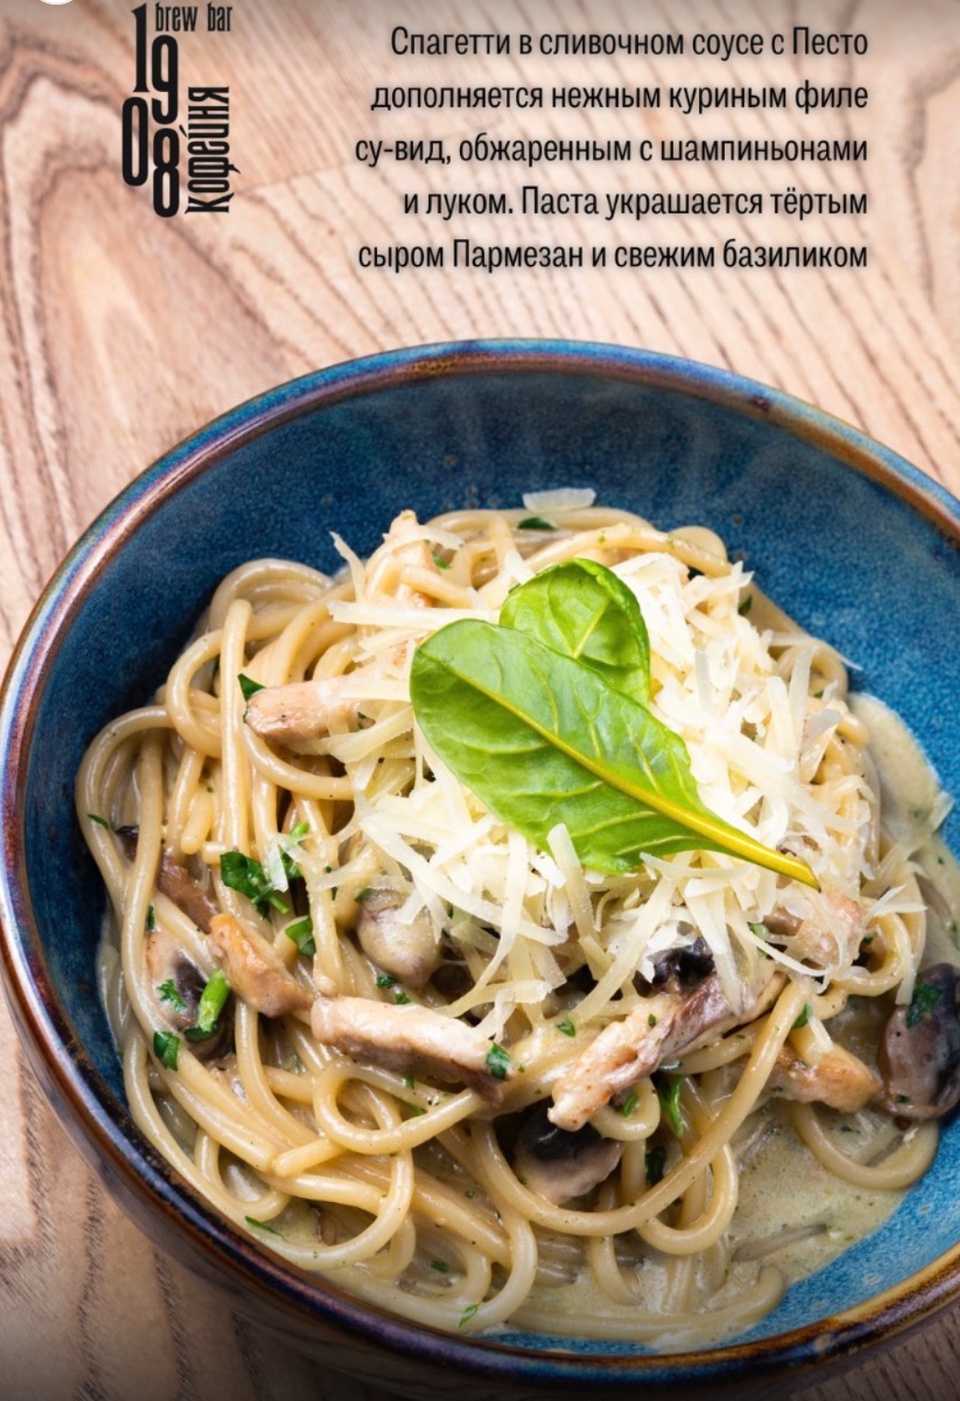 Спагетти с курицей и грибами под сливочным соусом - 440 ₽, заказать онлайн.